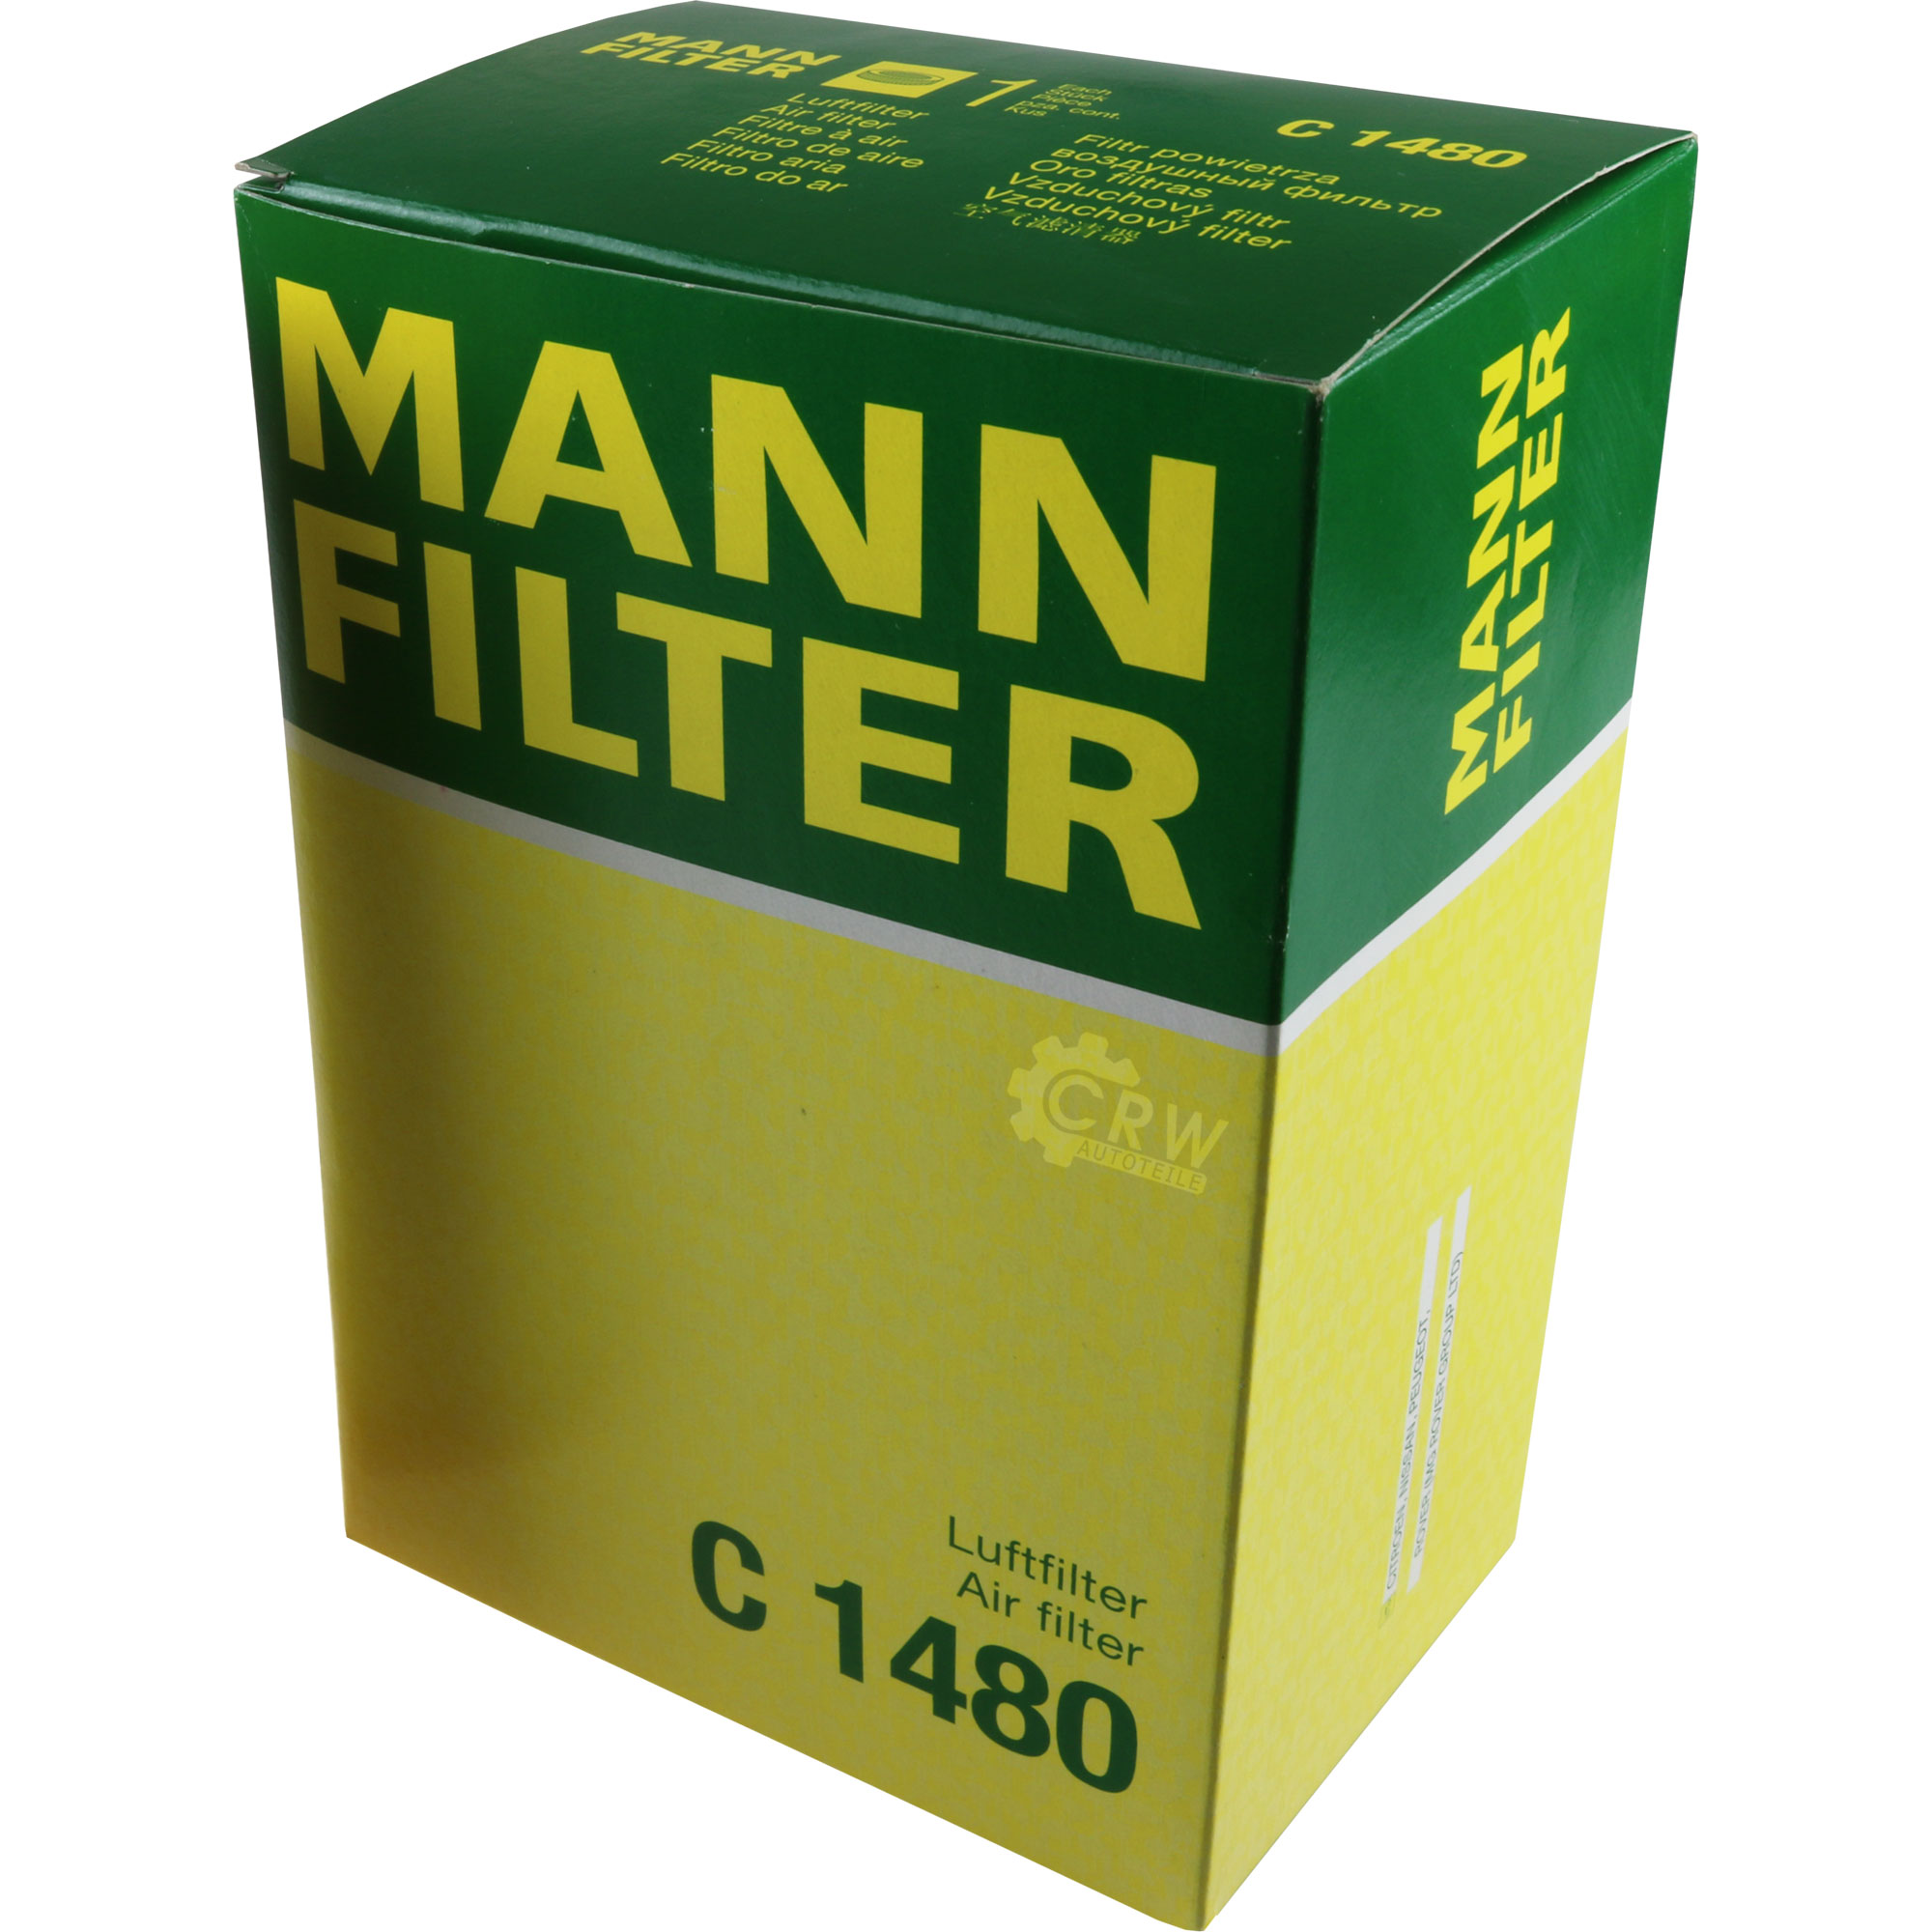 MANN-FILTER Luftfilter für Peugeot 106 II 1 1.5 D 1A 1C Citroën Saxo S0 S1 AX